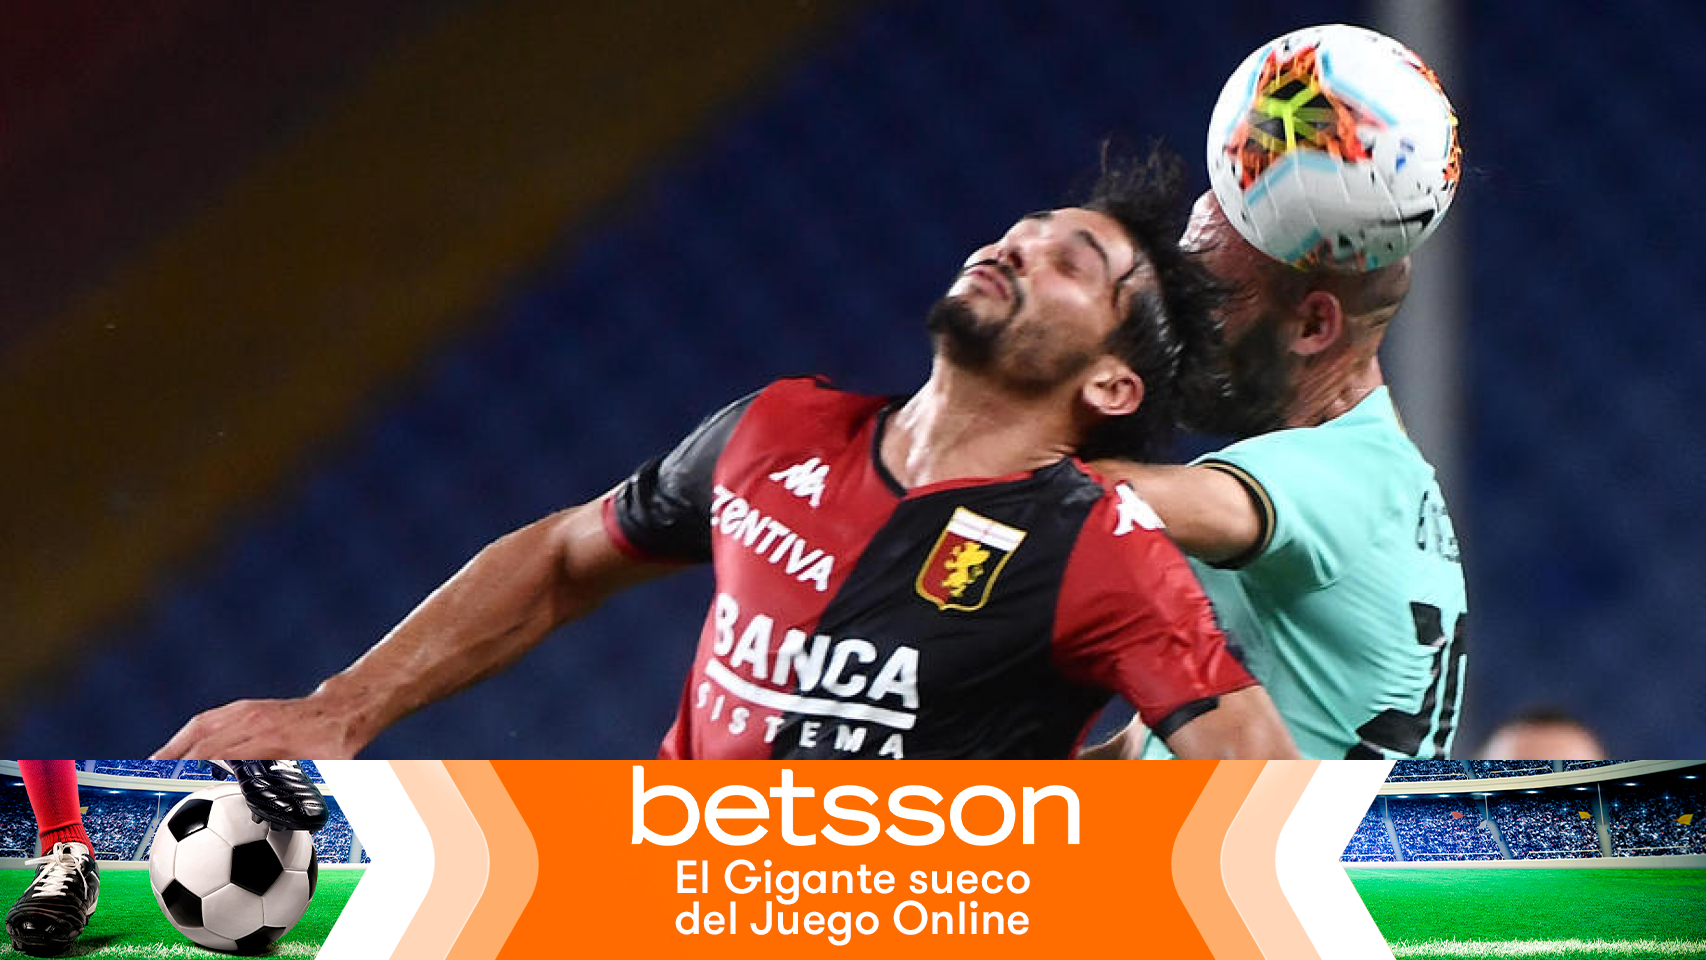 Las mejores apuestas en Betsson para la última jornada de la Serie A